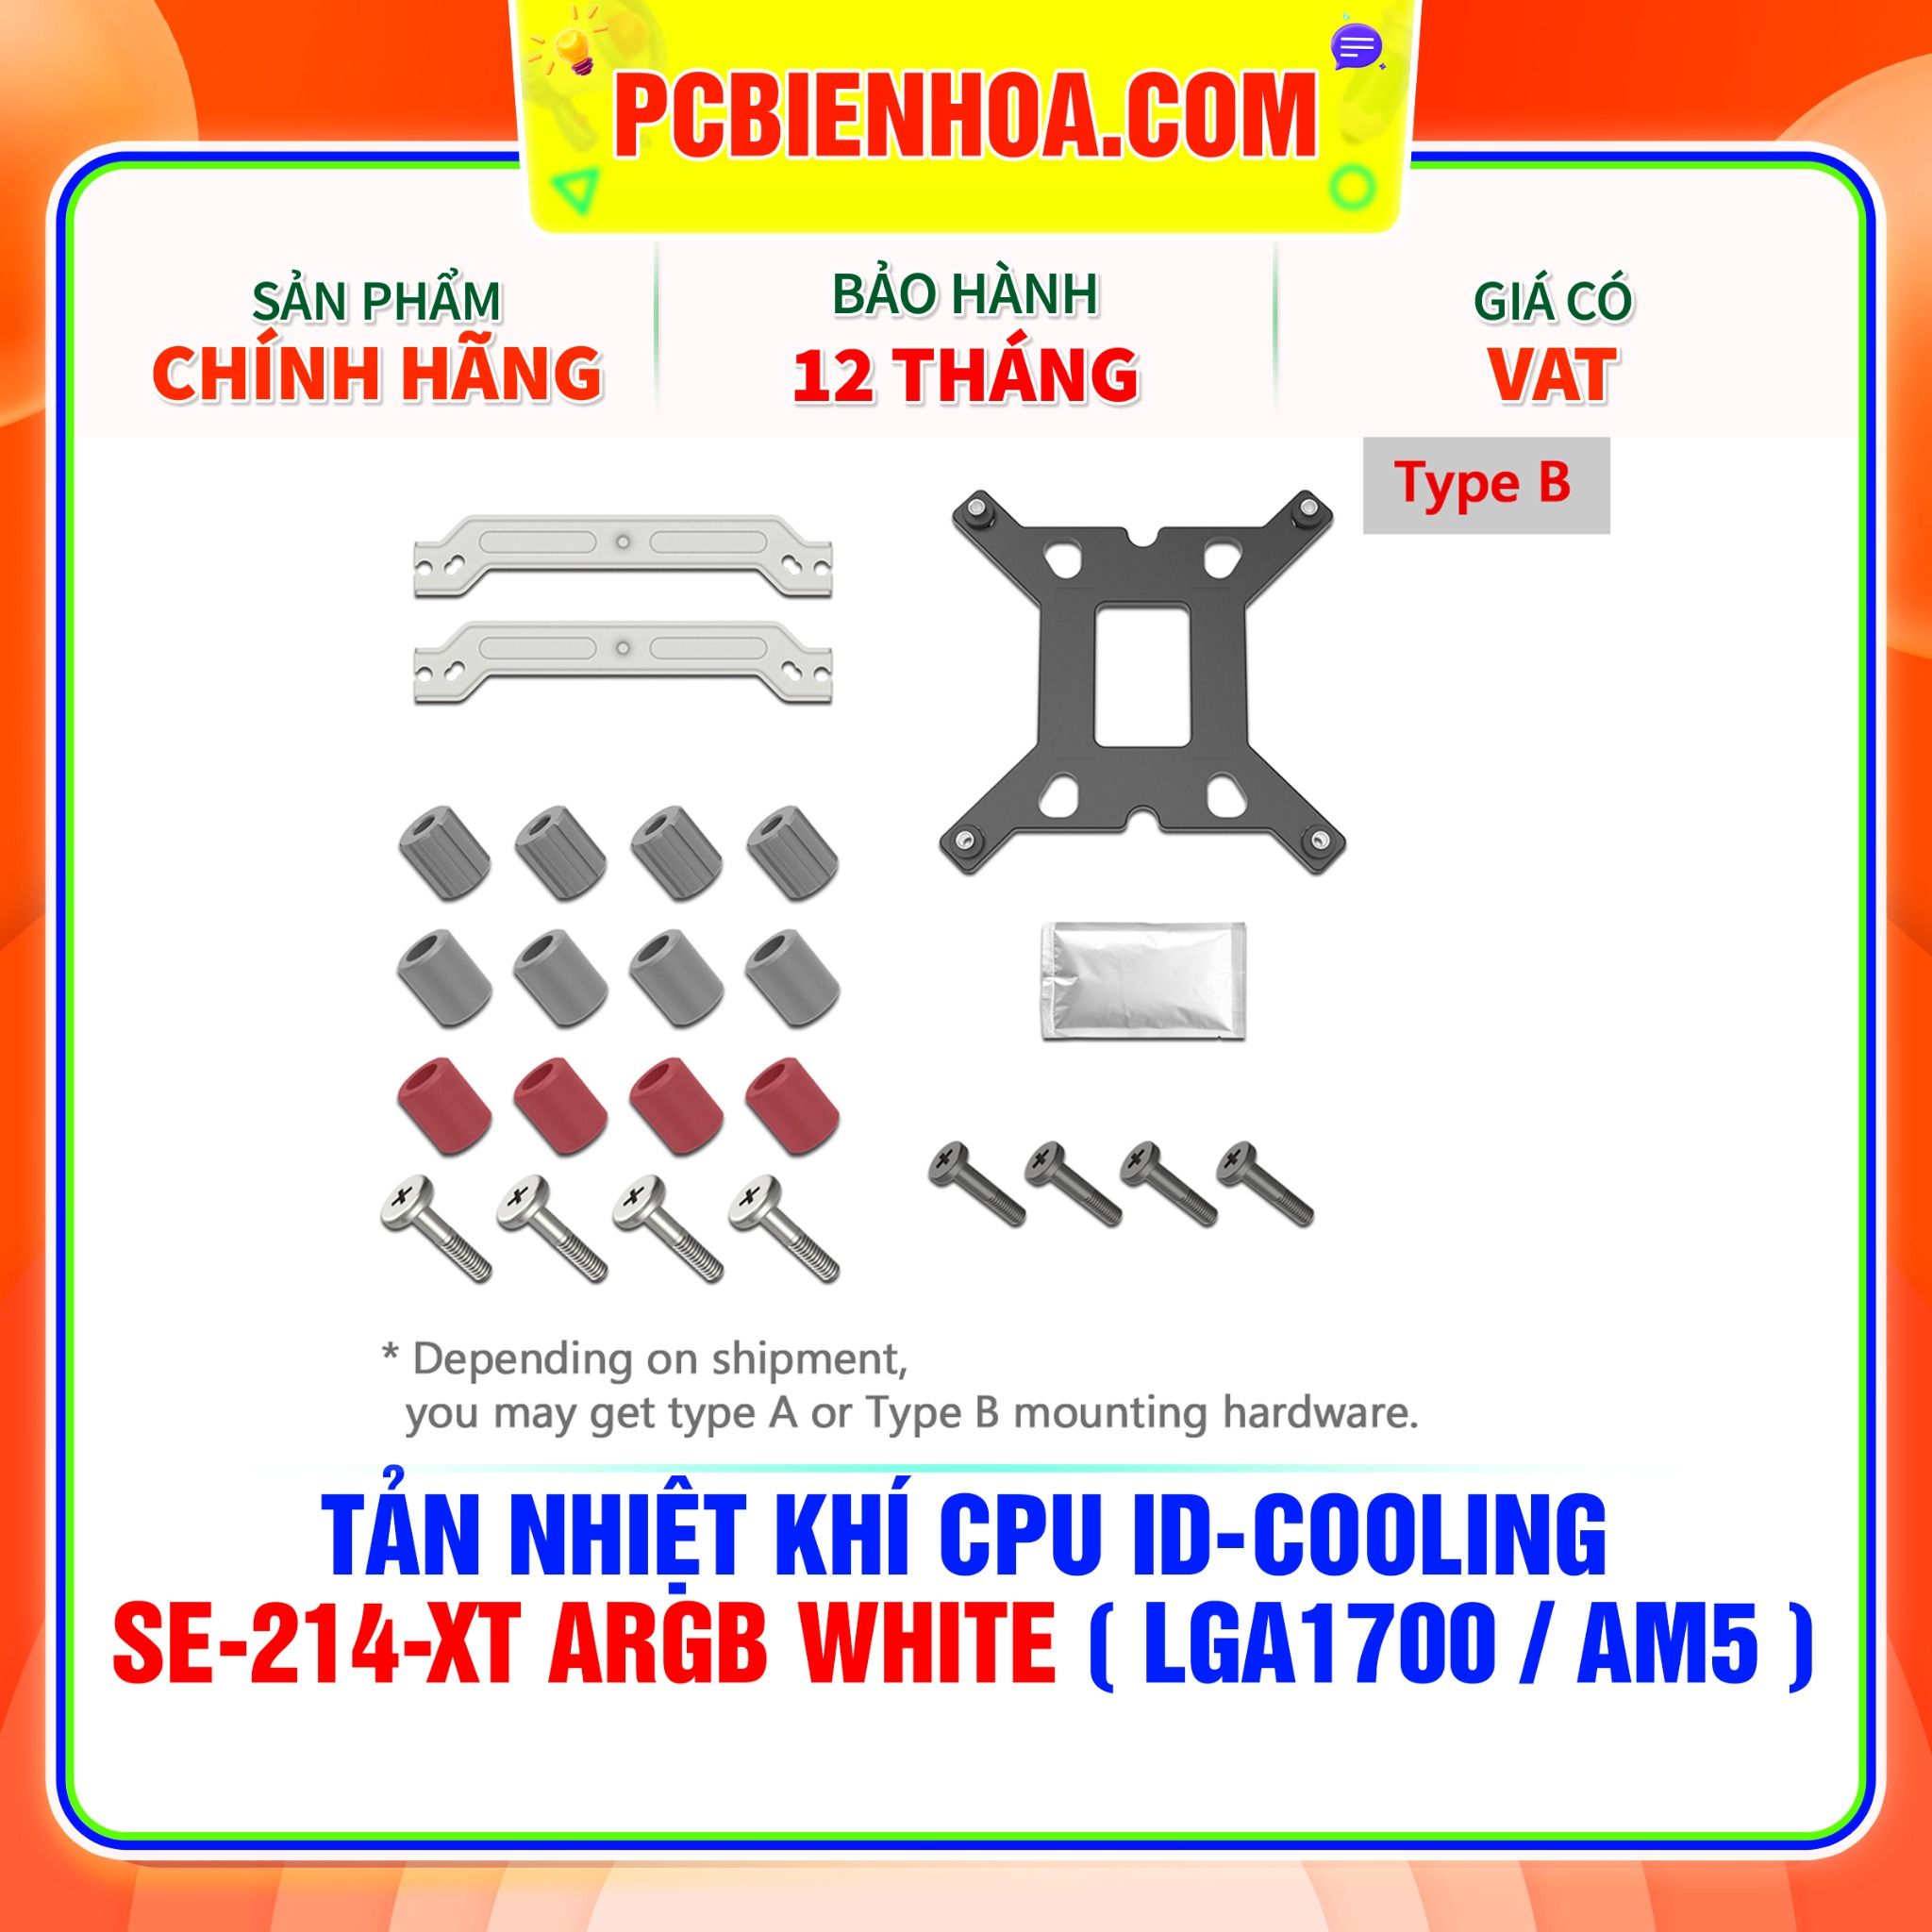  TẢN NHIỆT KHÍ CPU ID-COOLING SE-214-XT ARGB WHITE ( HỖ TRỢ SOCKET LGA1700 / AM5 ) 